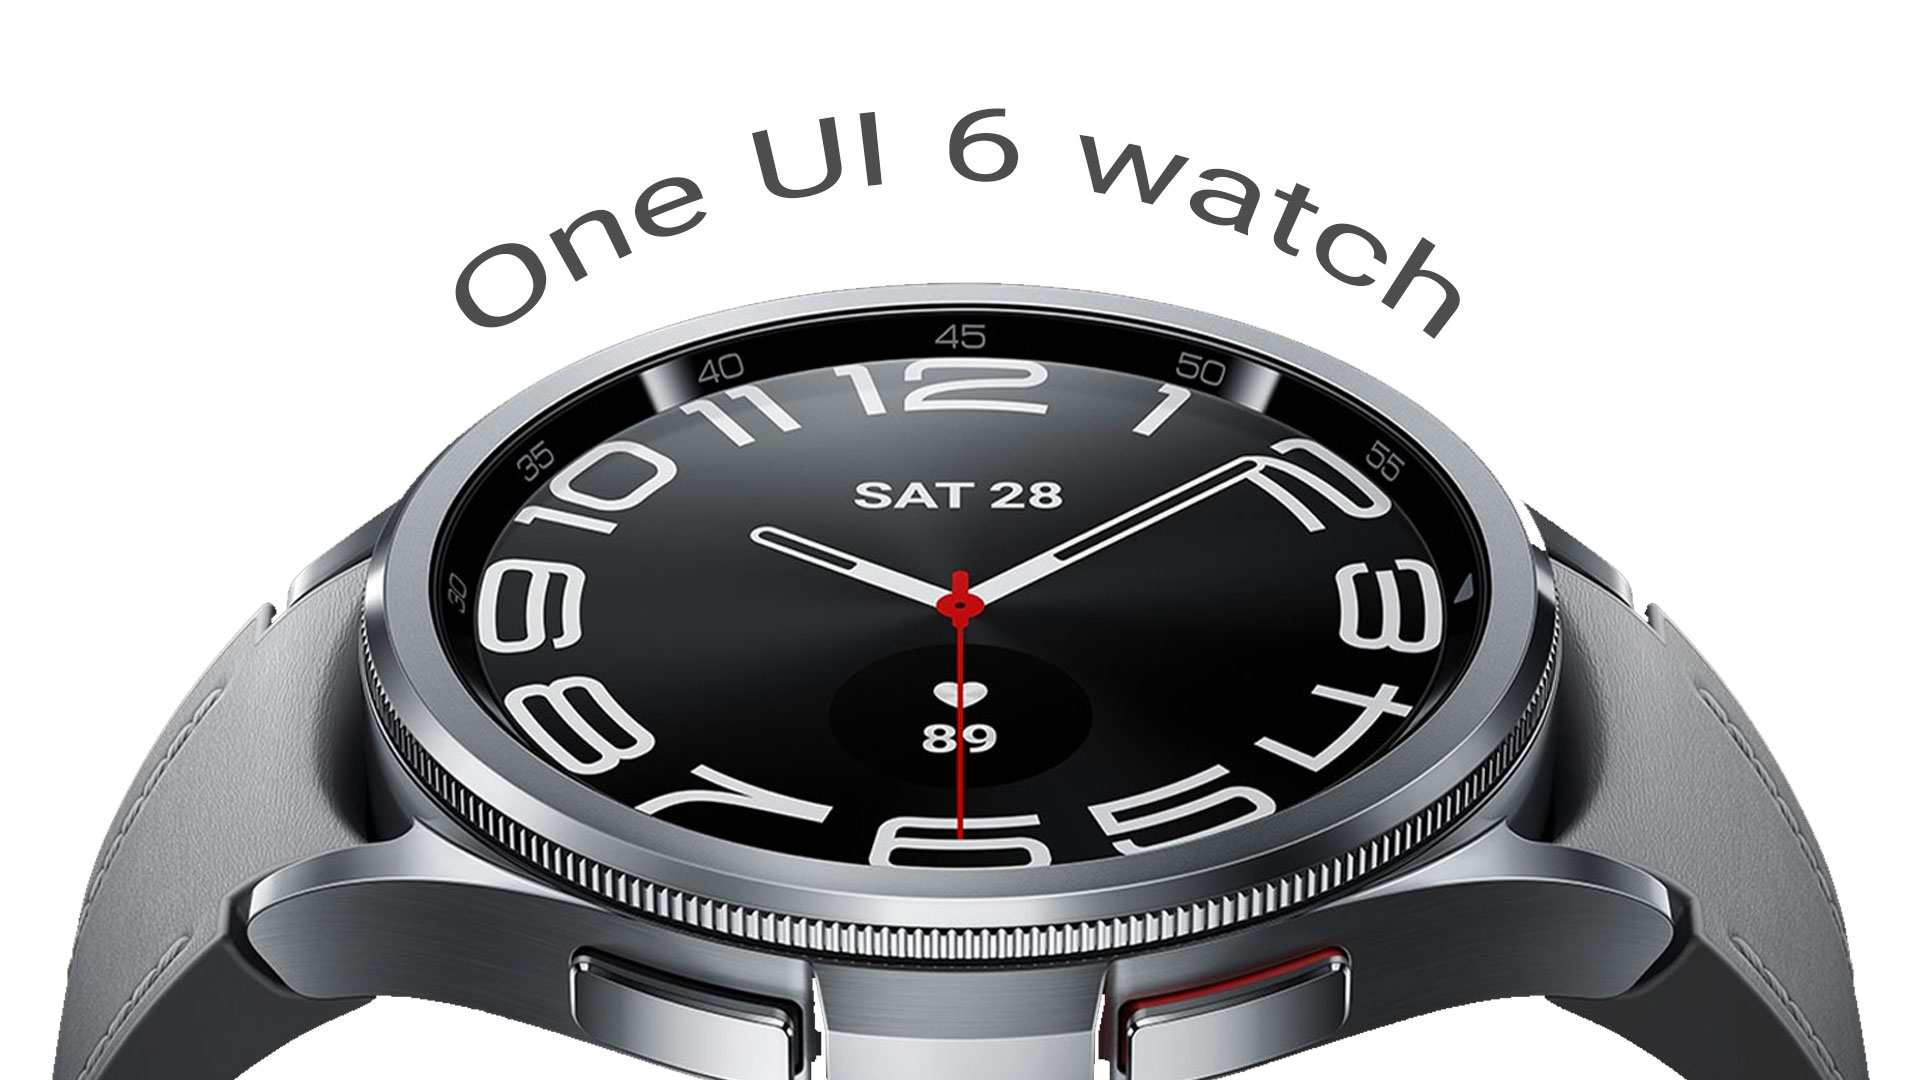 قابلیت جدید One UI 6 Watch